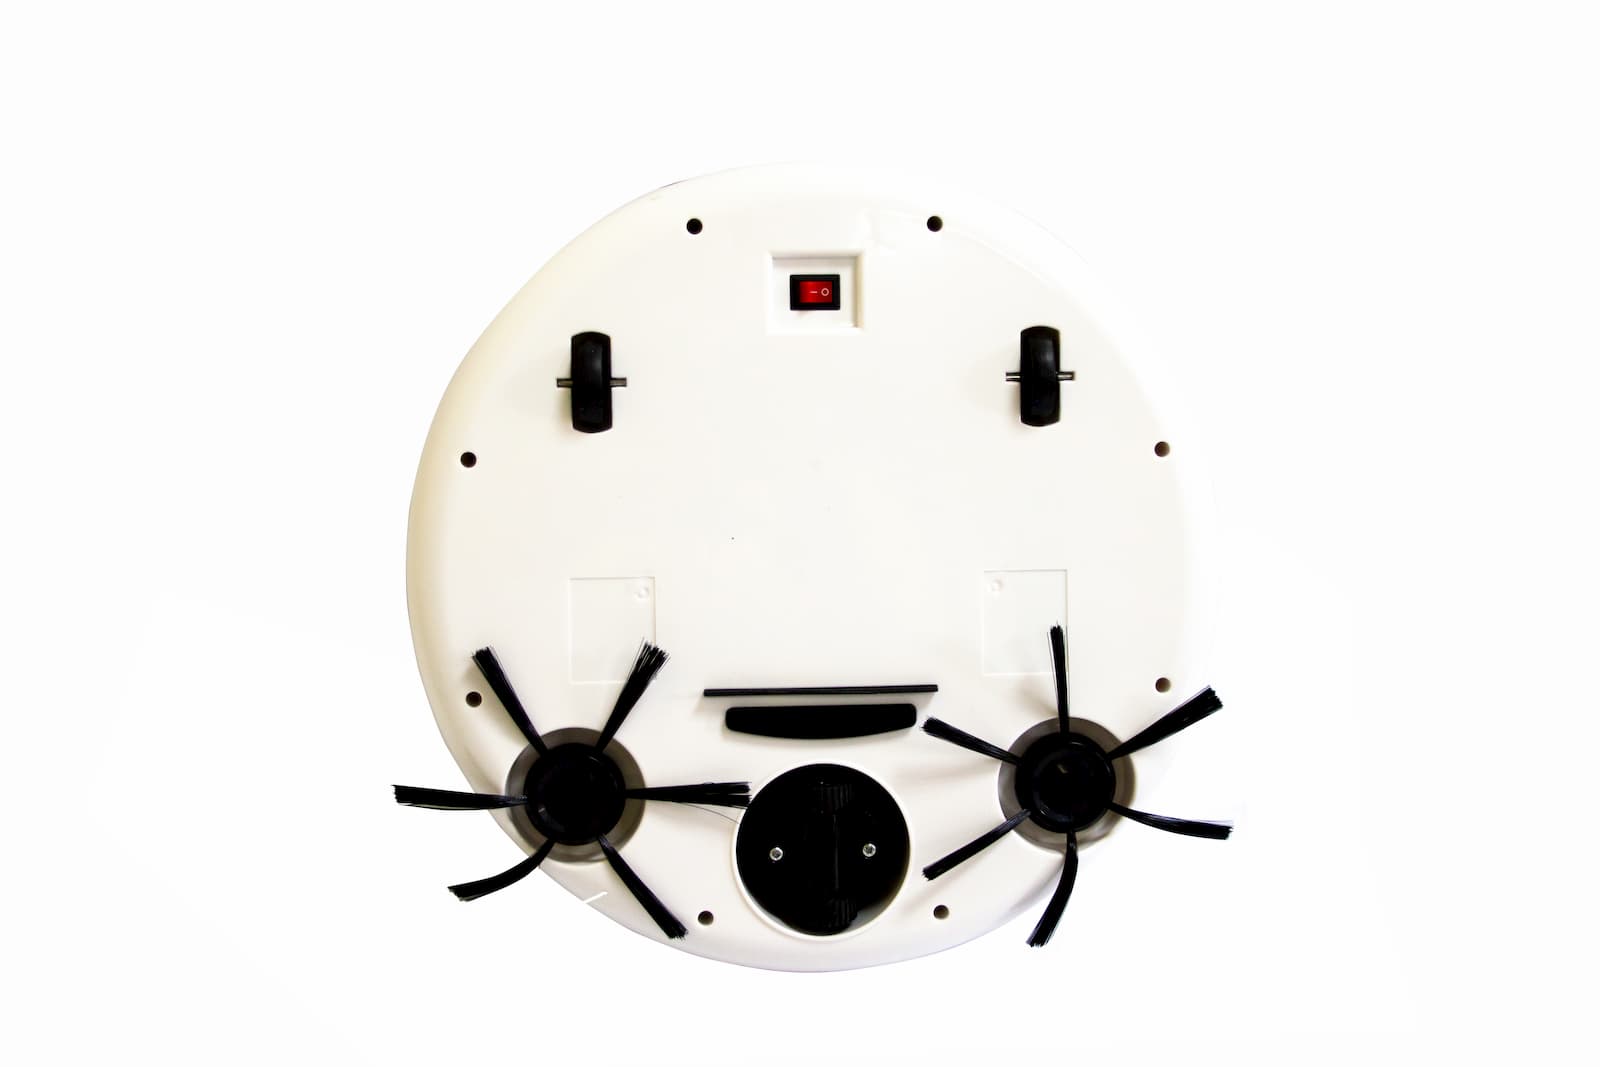 Робот-пылесос интерактивный «Sweeping Robot» 009В